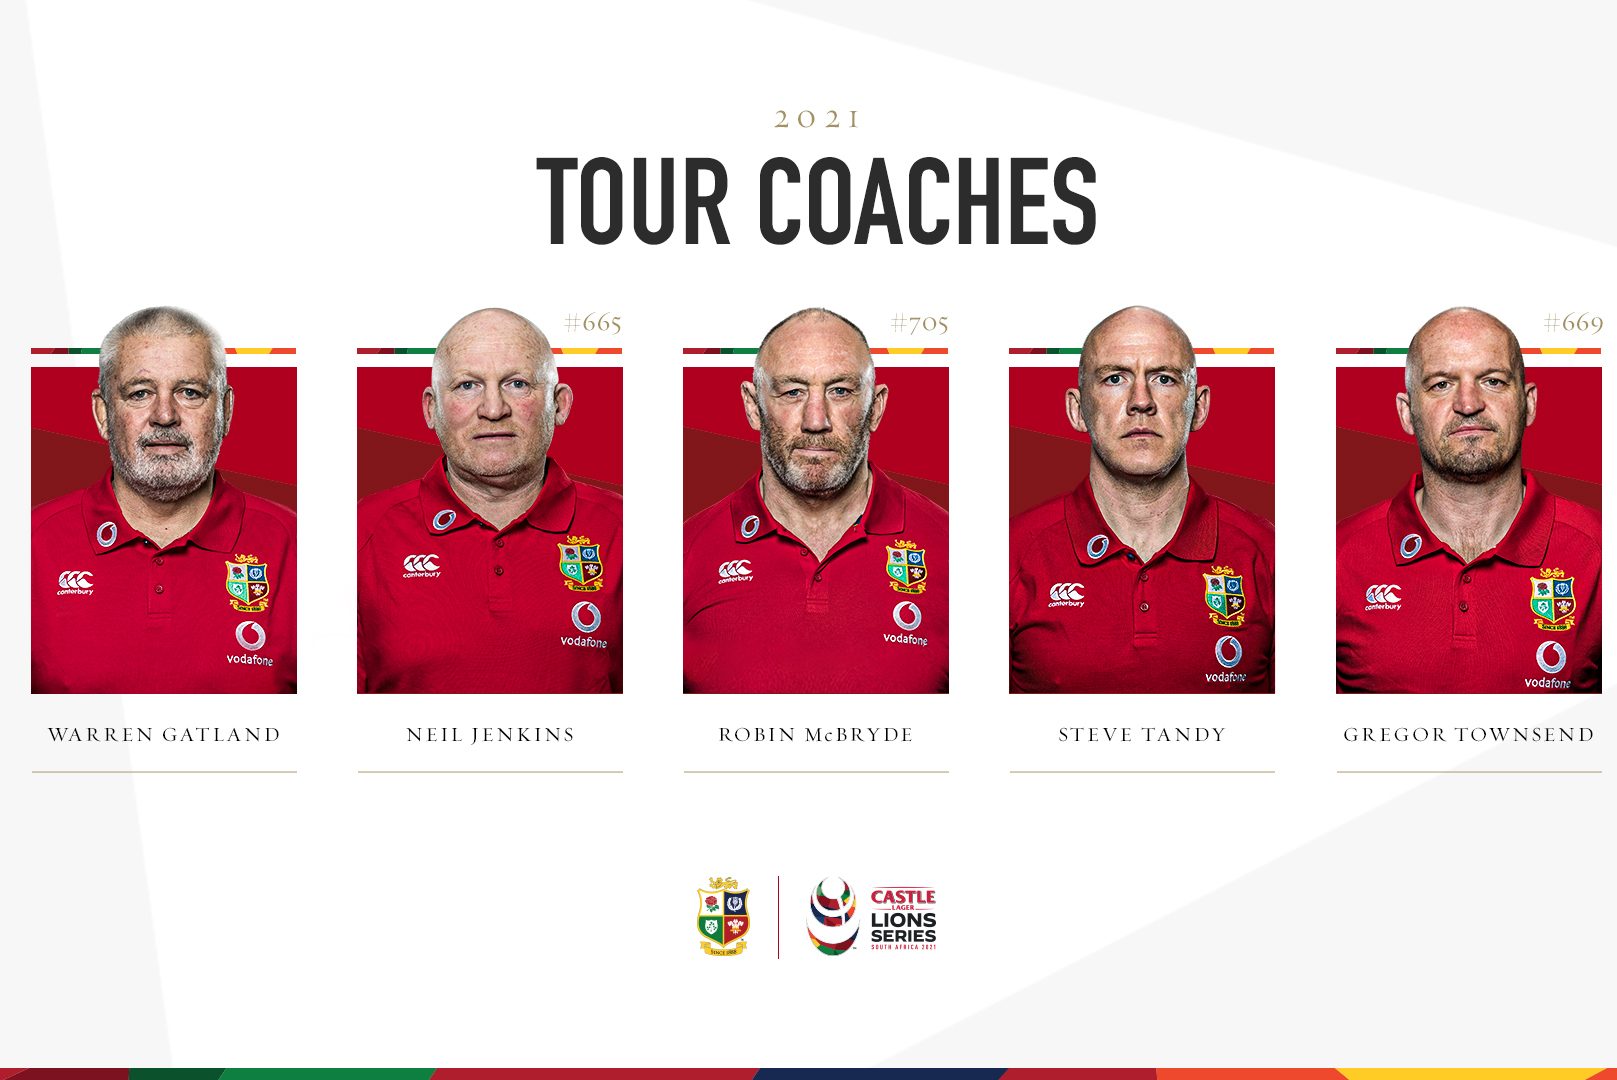 2021 British & Irish Lions coaches: Warren Gatland, Neil Jenkins, Robin McBryde, Steve Tandy, Gregor Townsend